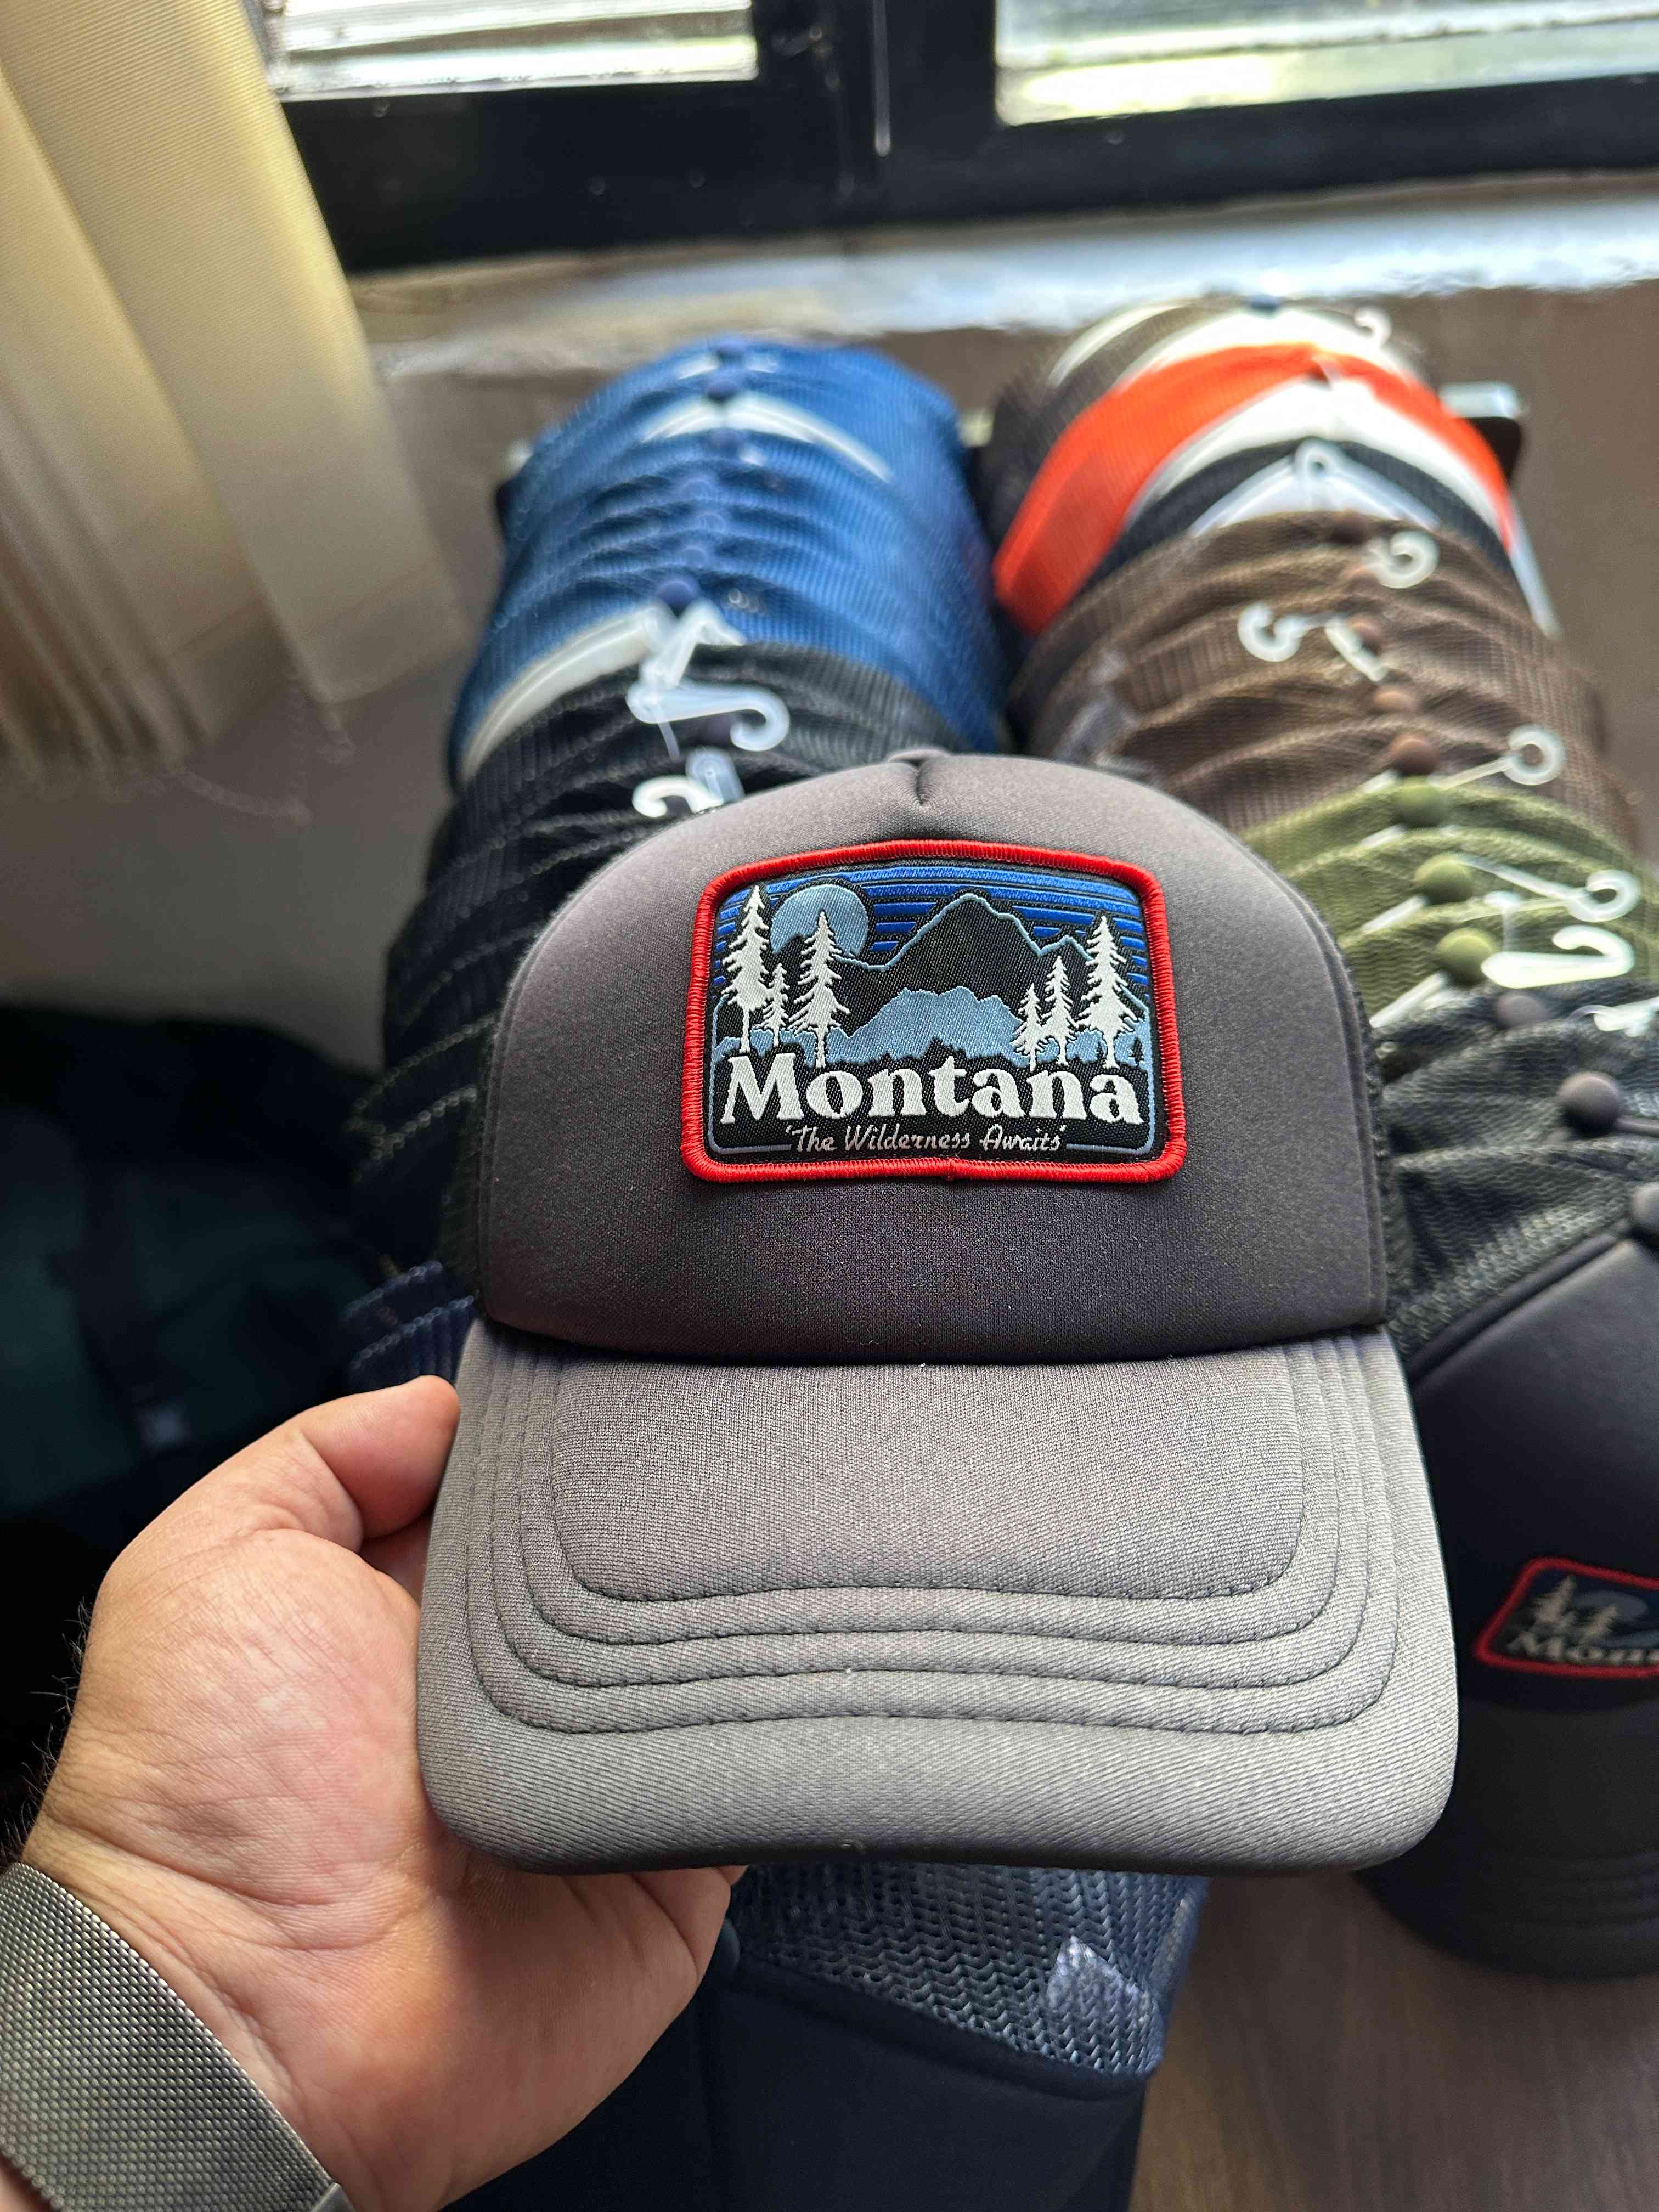 Montana Tucker's cap